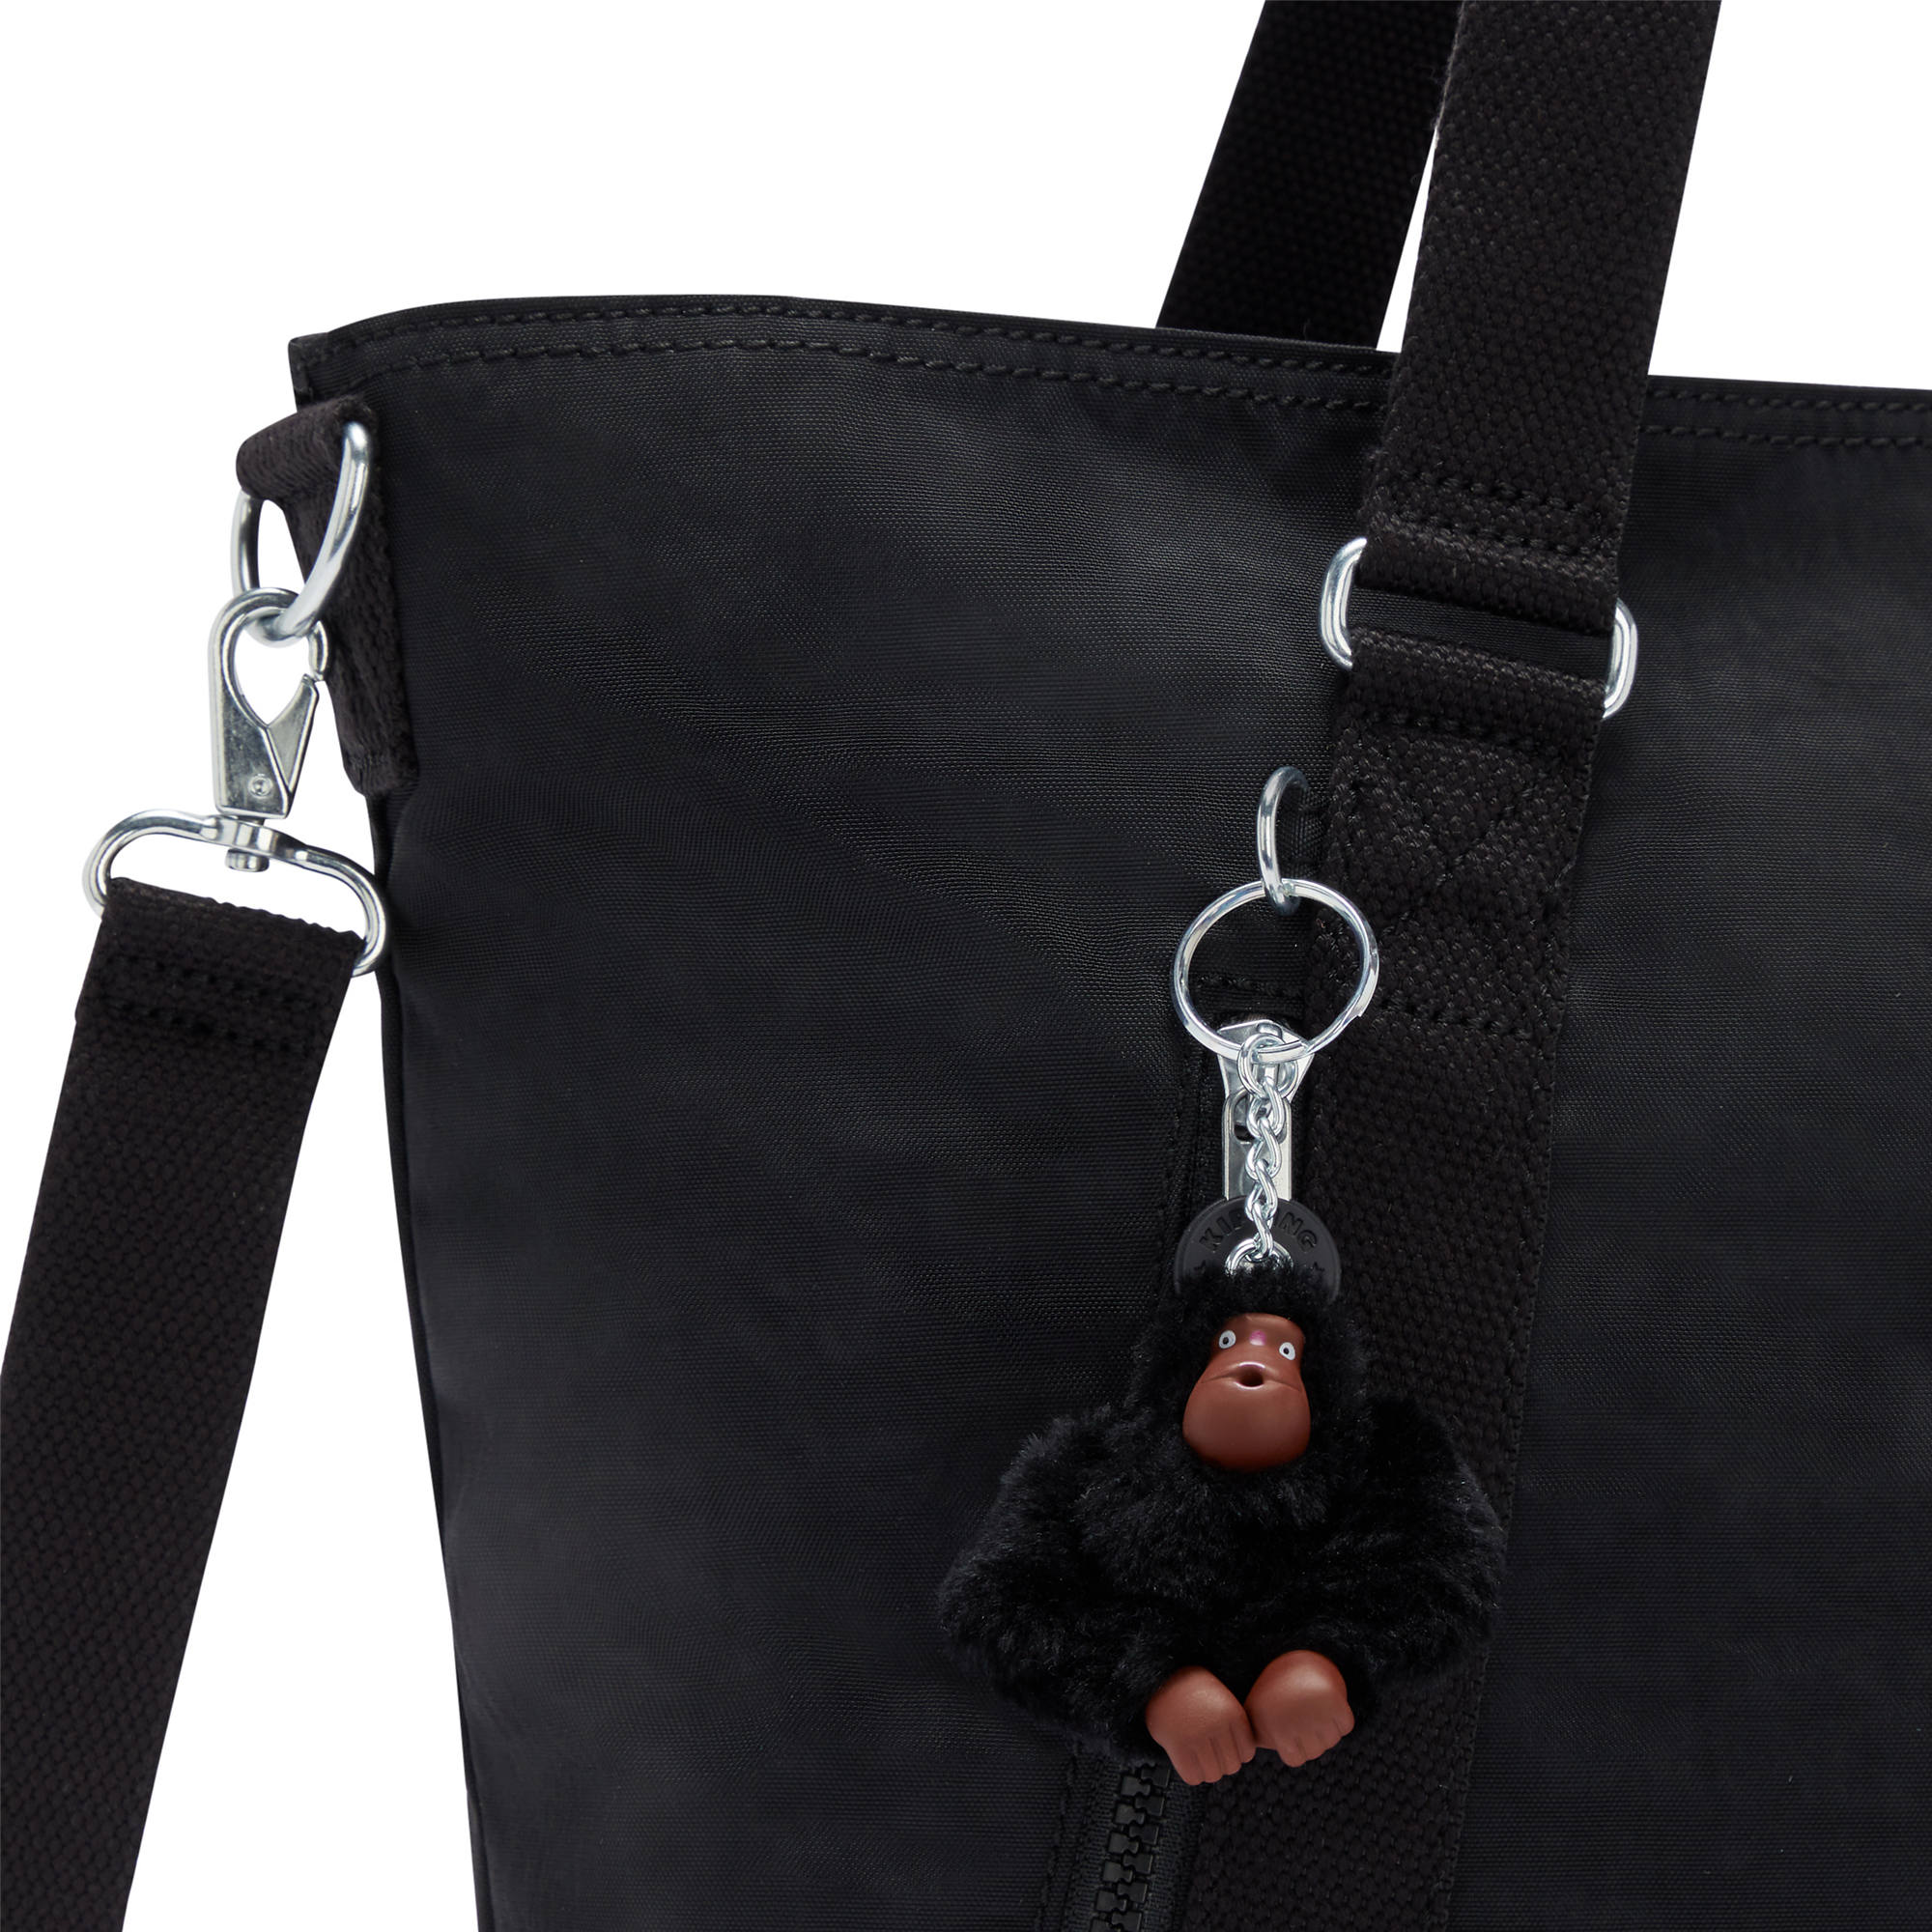 Kipling Women's Skyler Large Tote Bag with Adjustable Strap | eBay